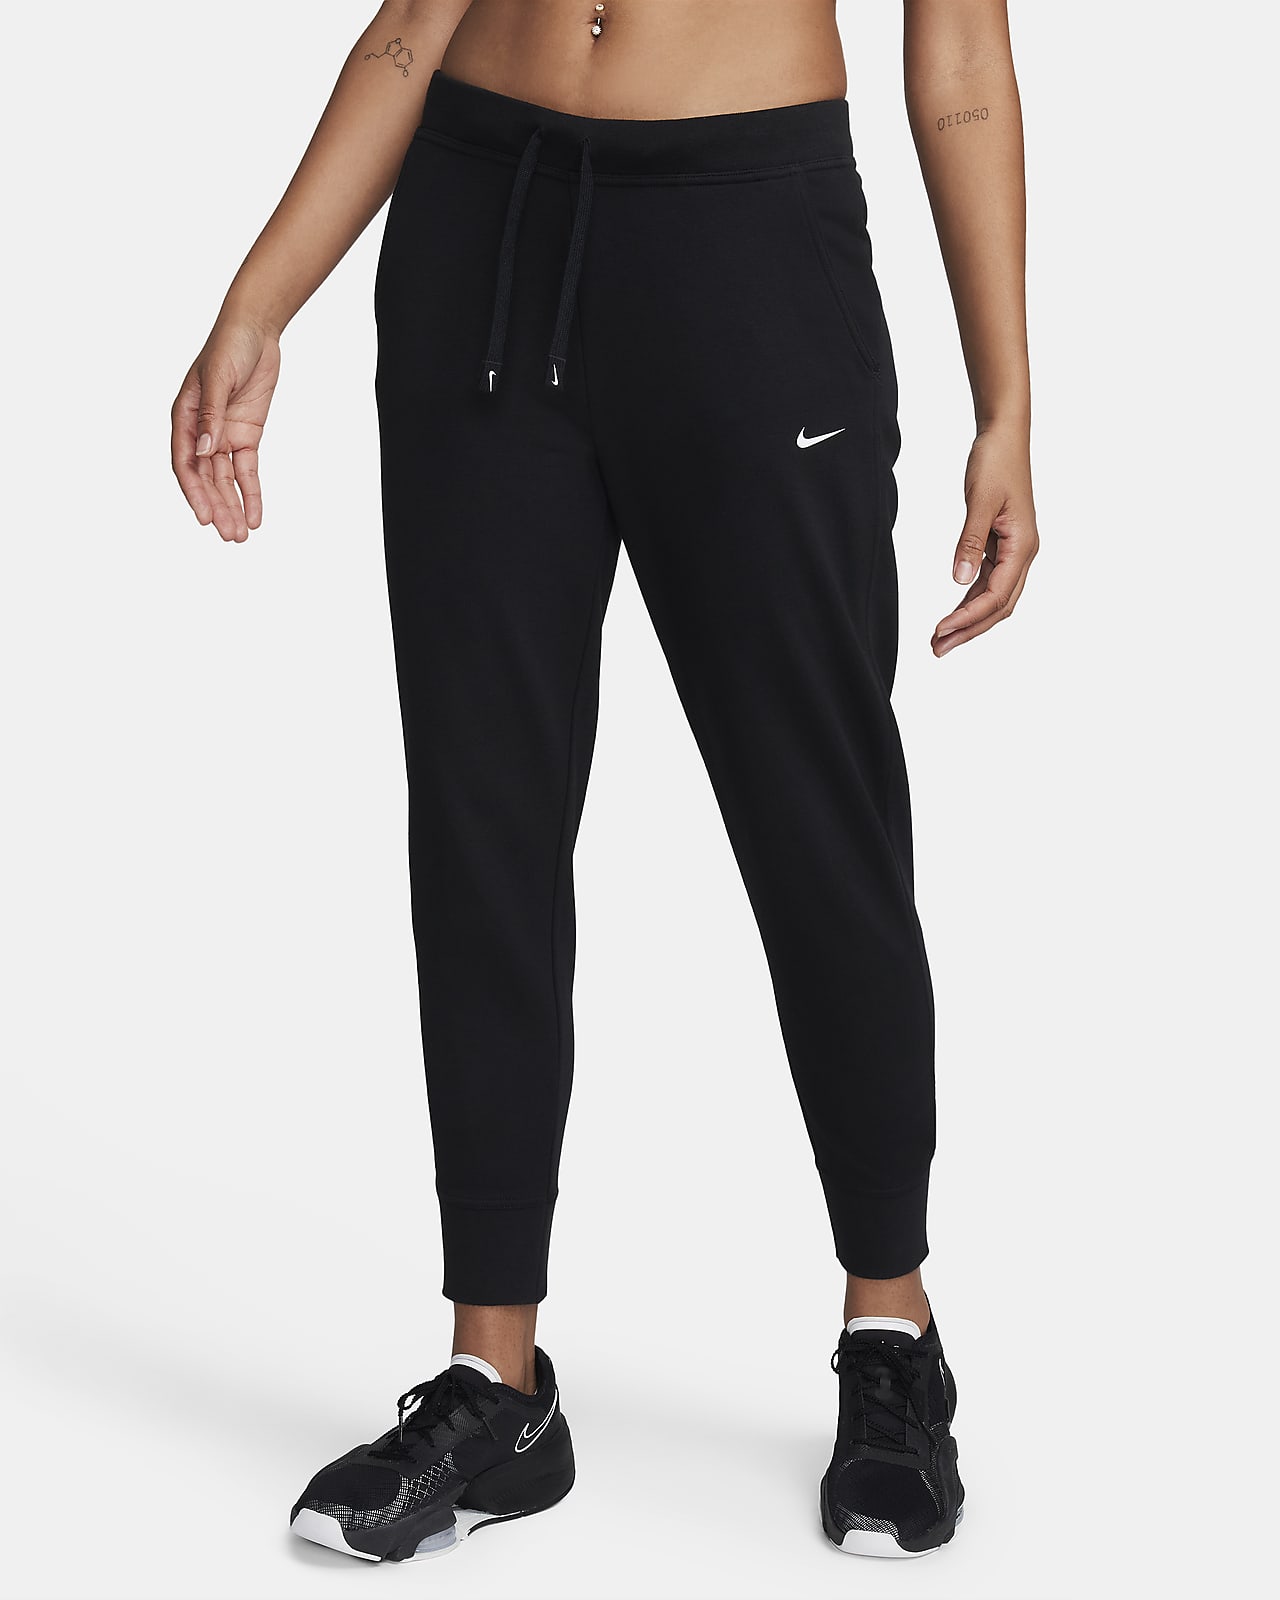 Γυναικείο παντελόνι προπόνησης Nike Dri-FIT Get Fit